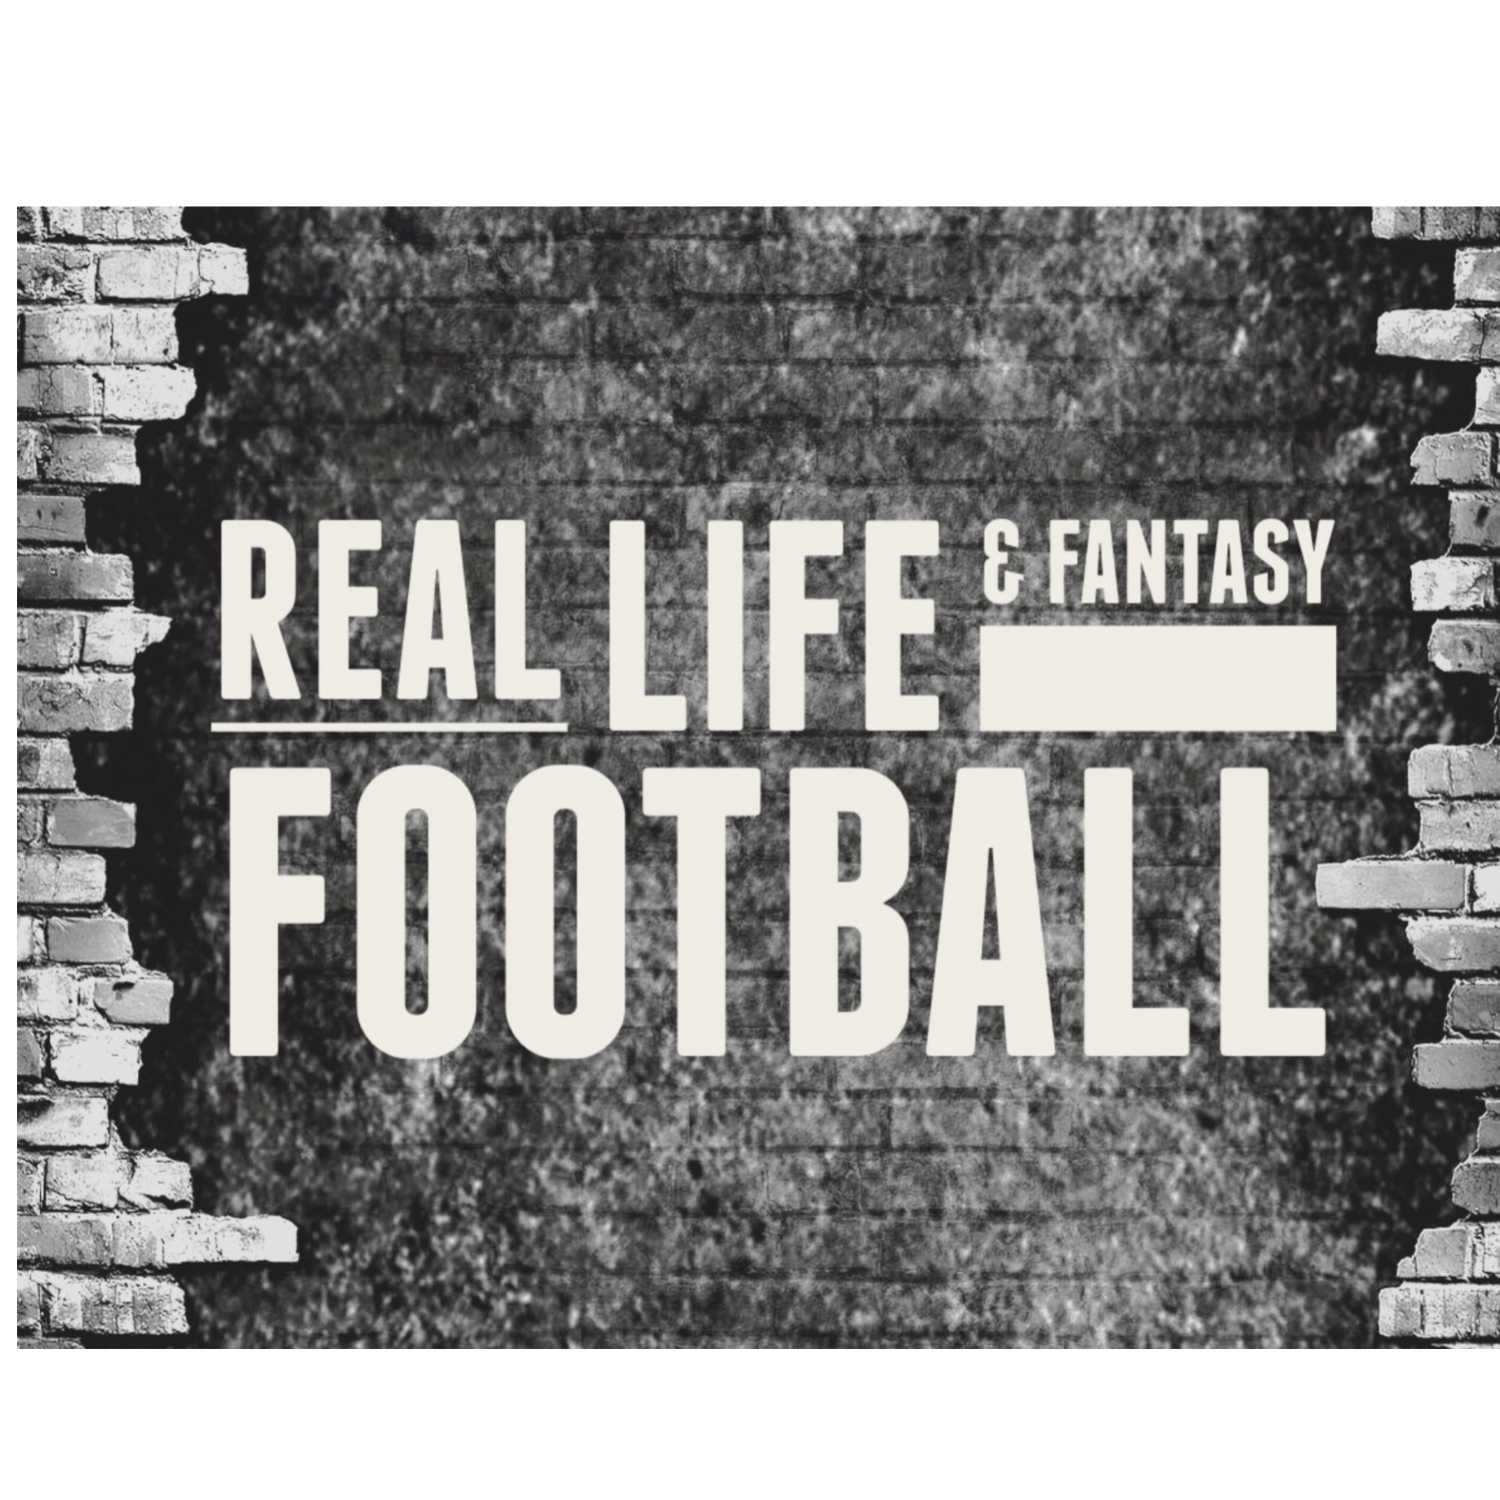 Real Life and Fantasy Football